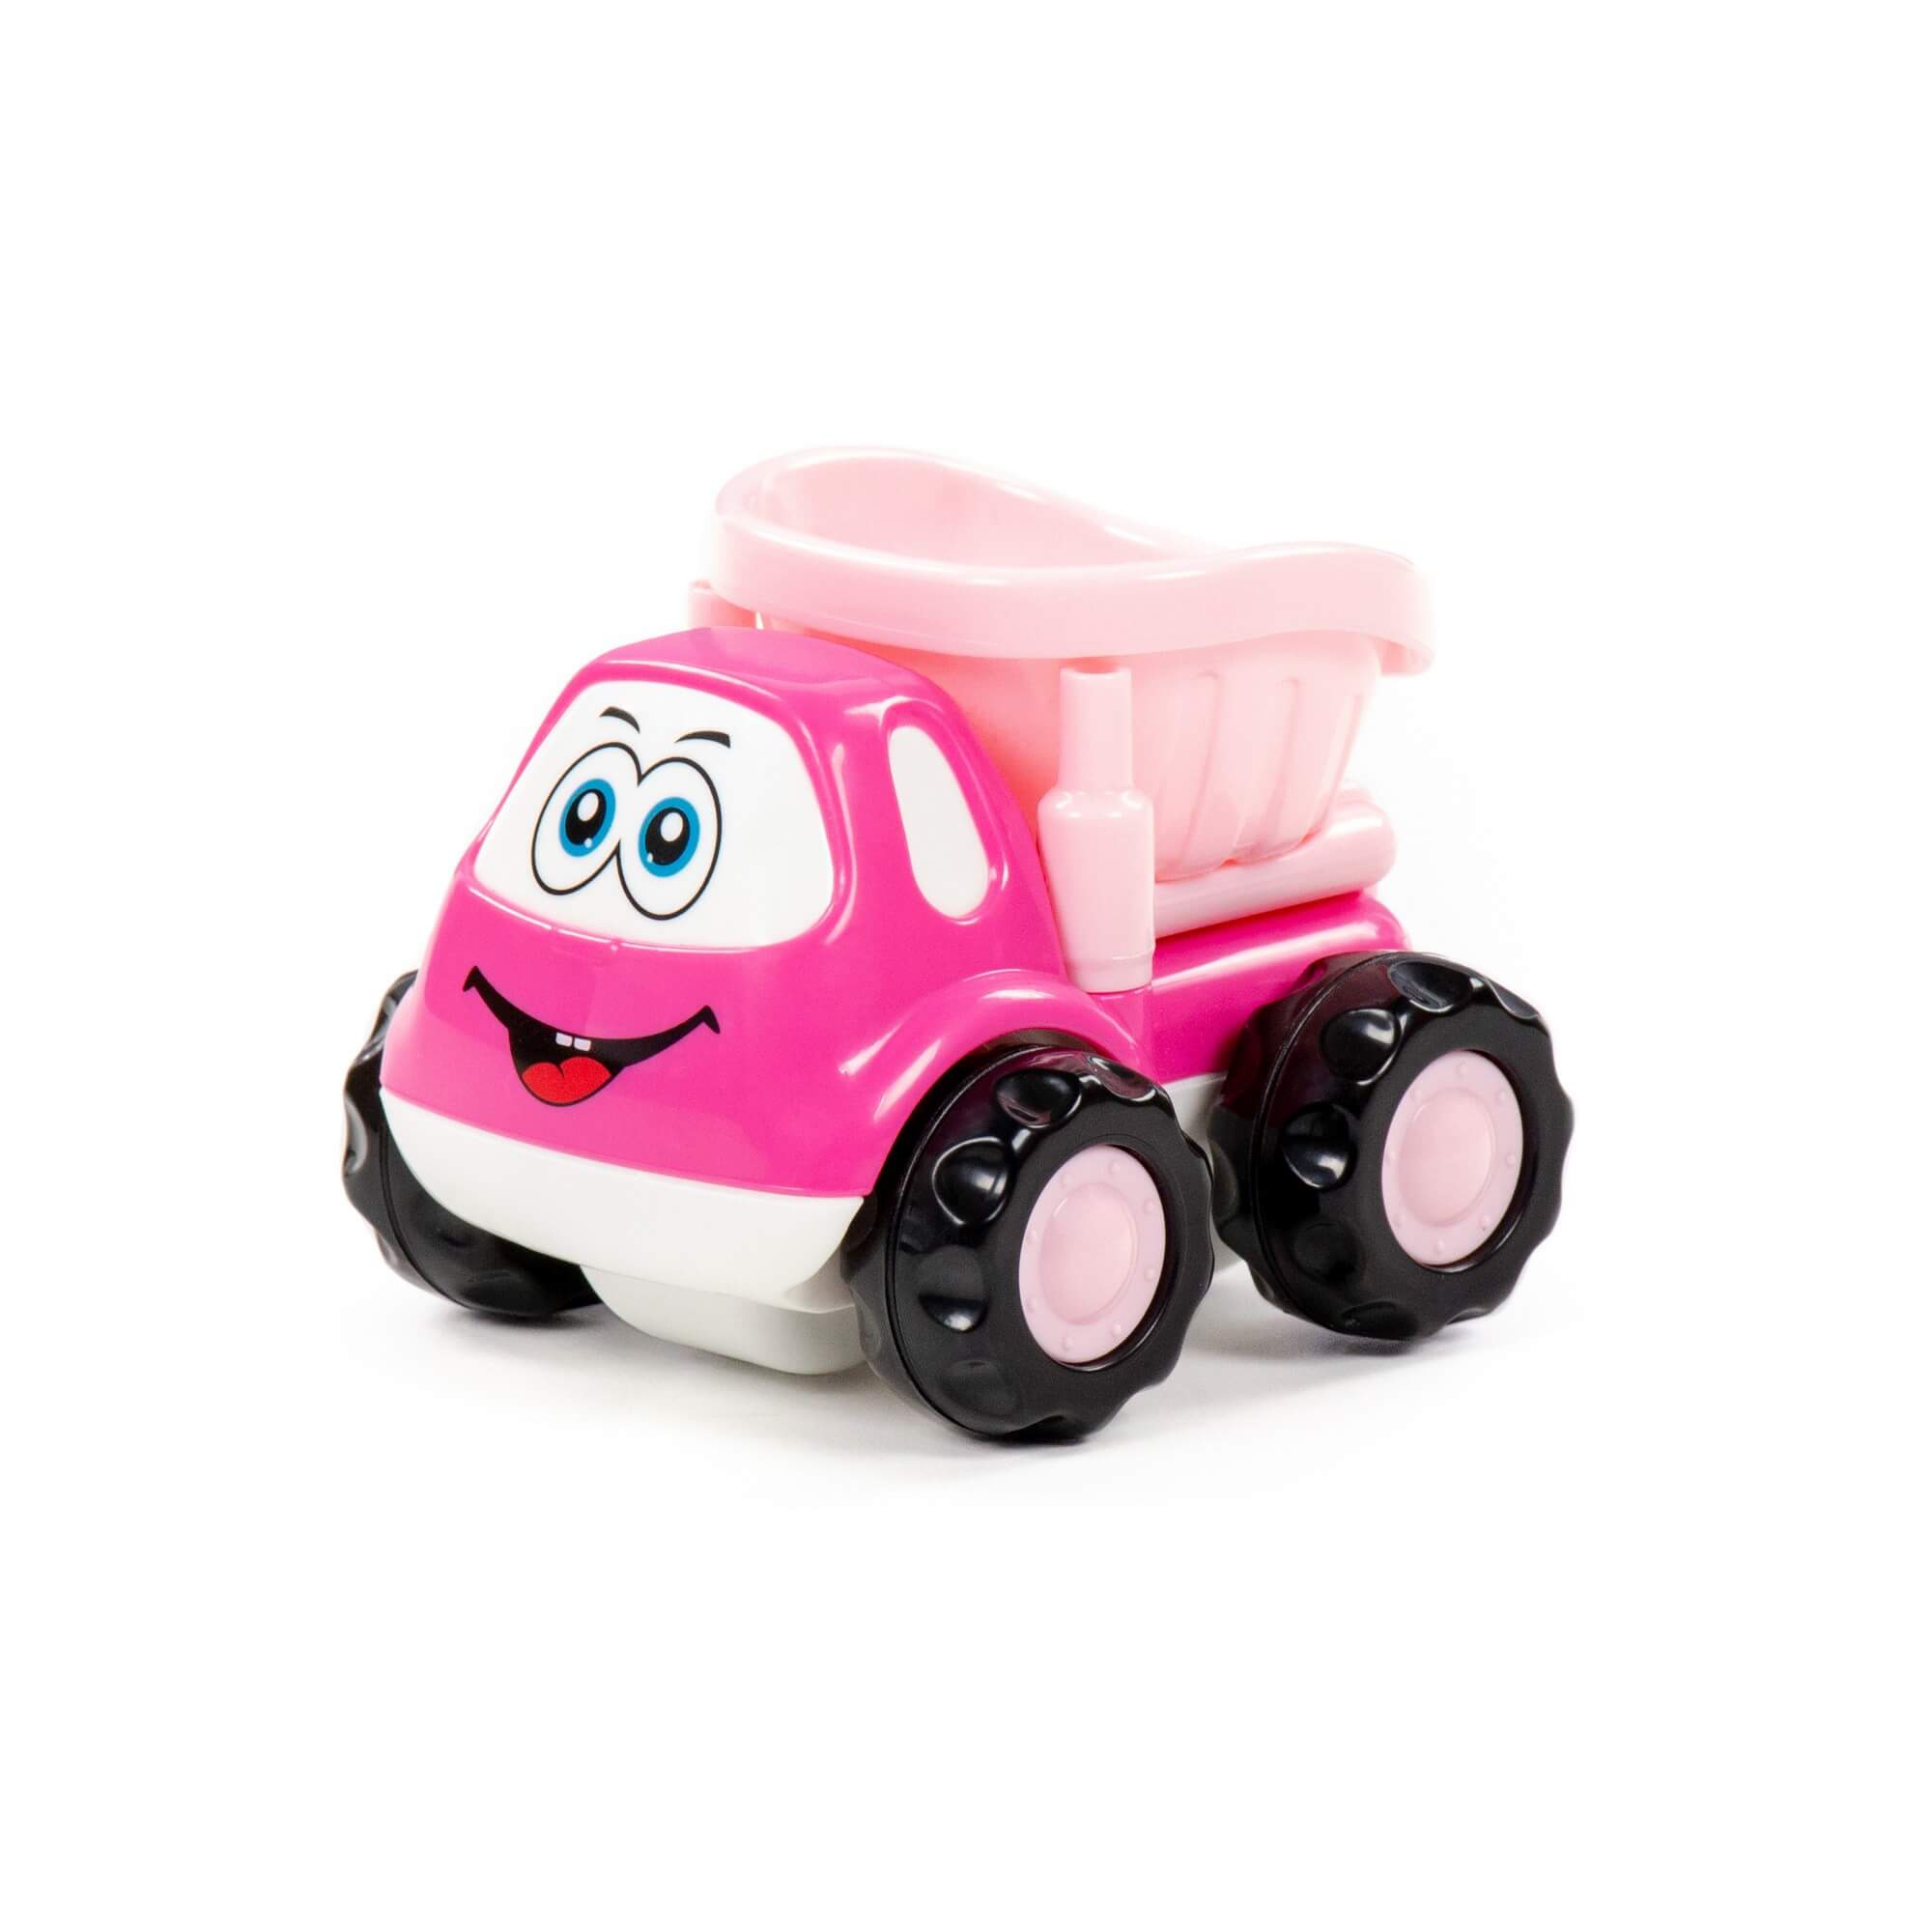 Автомобиль-самосвал Полесье Патрик, инерционный, розовый, в пакете 88789 полесье профи автомобиль самосвал инерционный